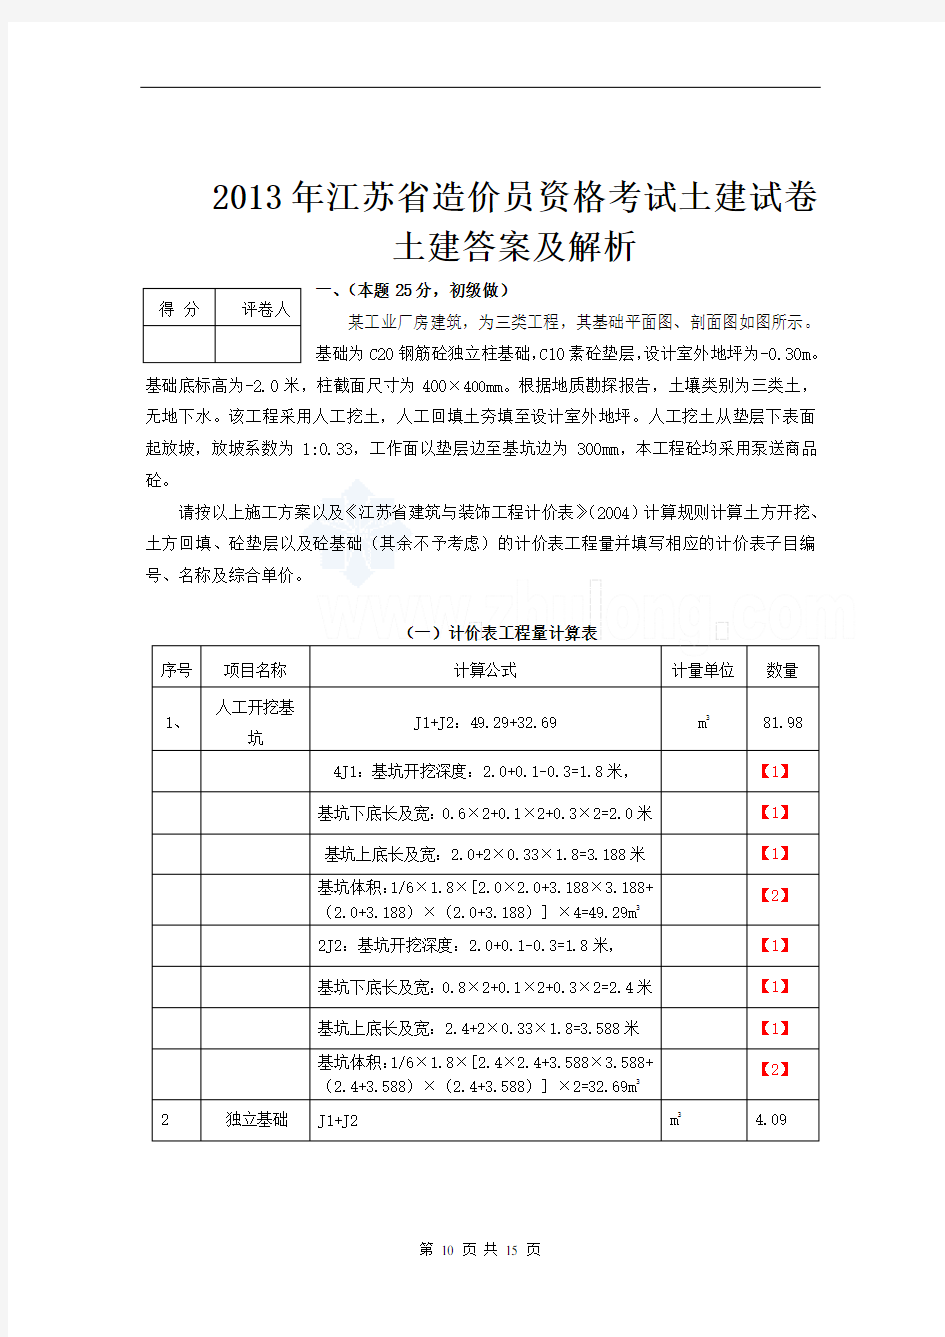 2013年江苏省造价员考试土建试题及评分标准_secret